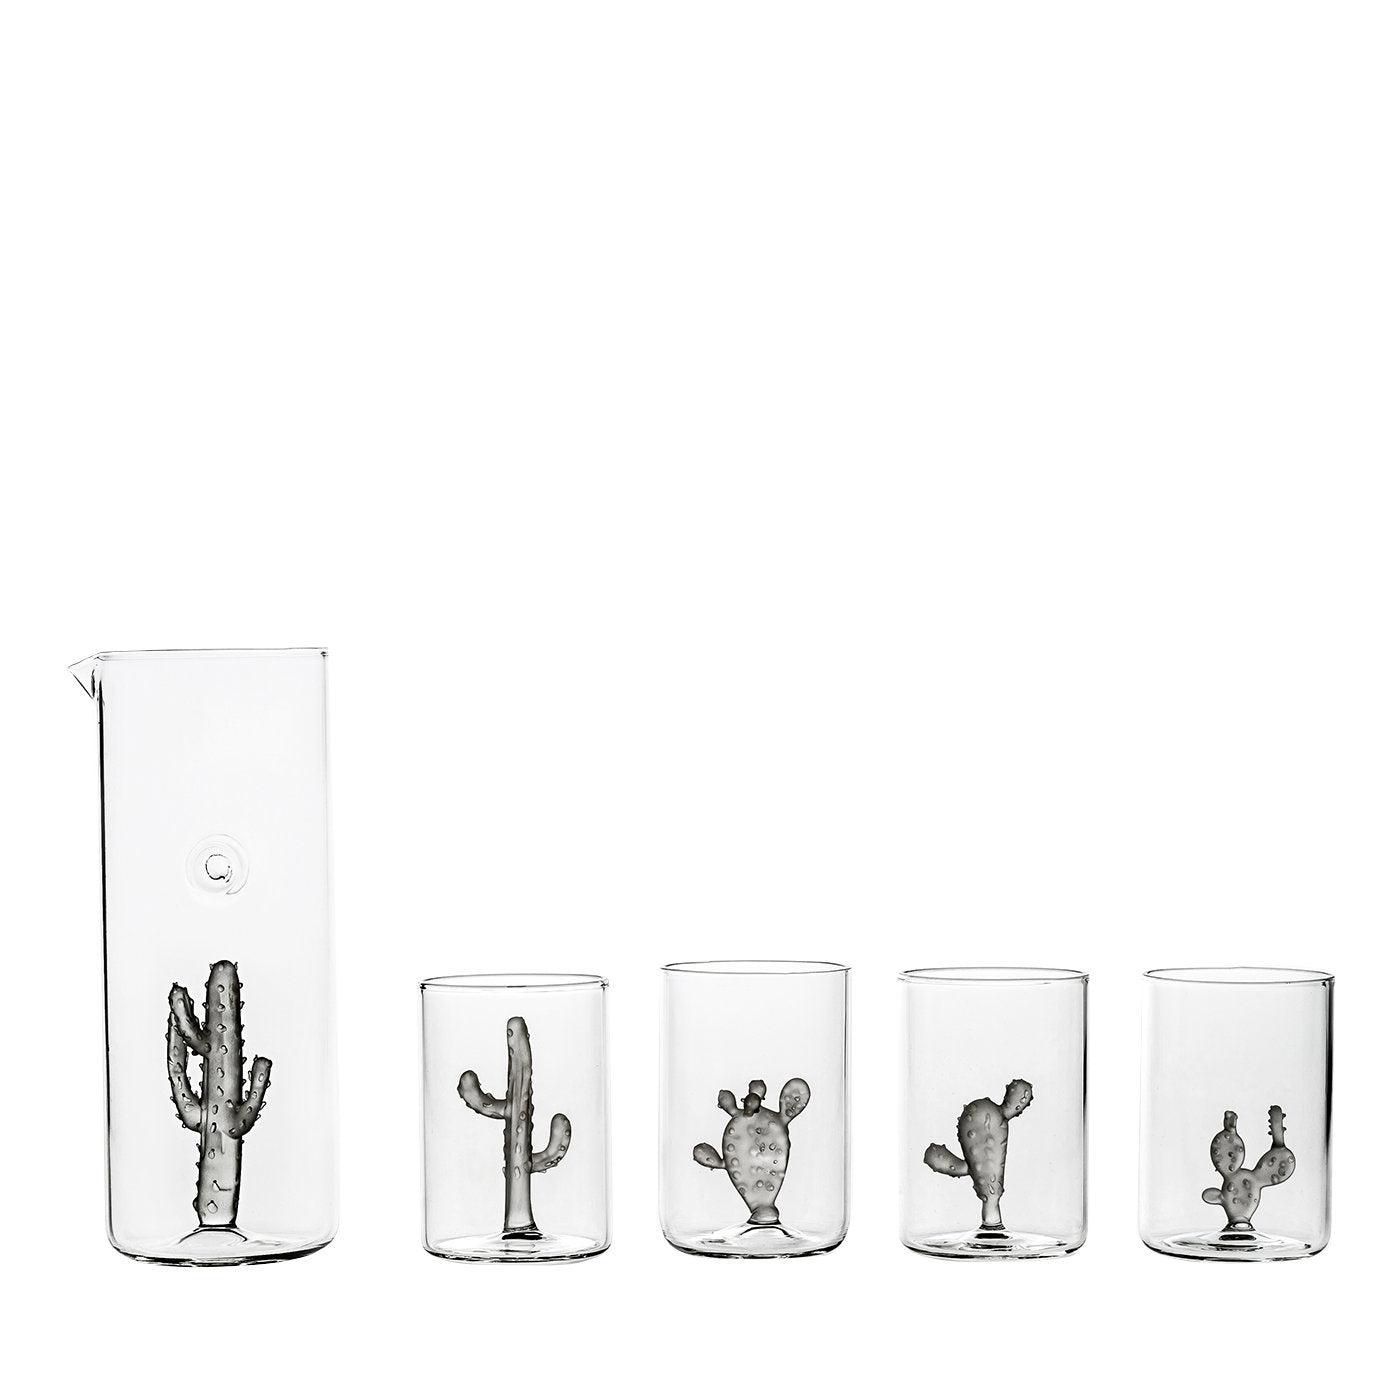 Juego de 4 vasos y 1 jarra Colección Cactus - Vista principal